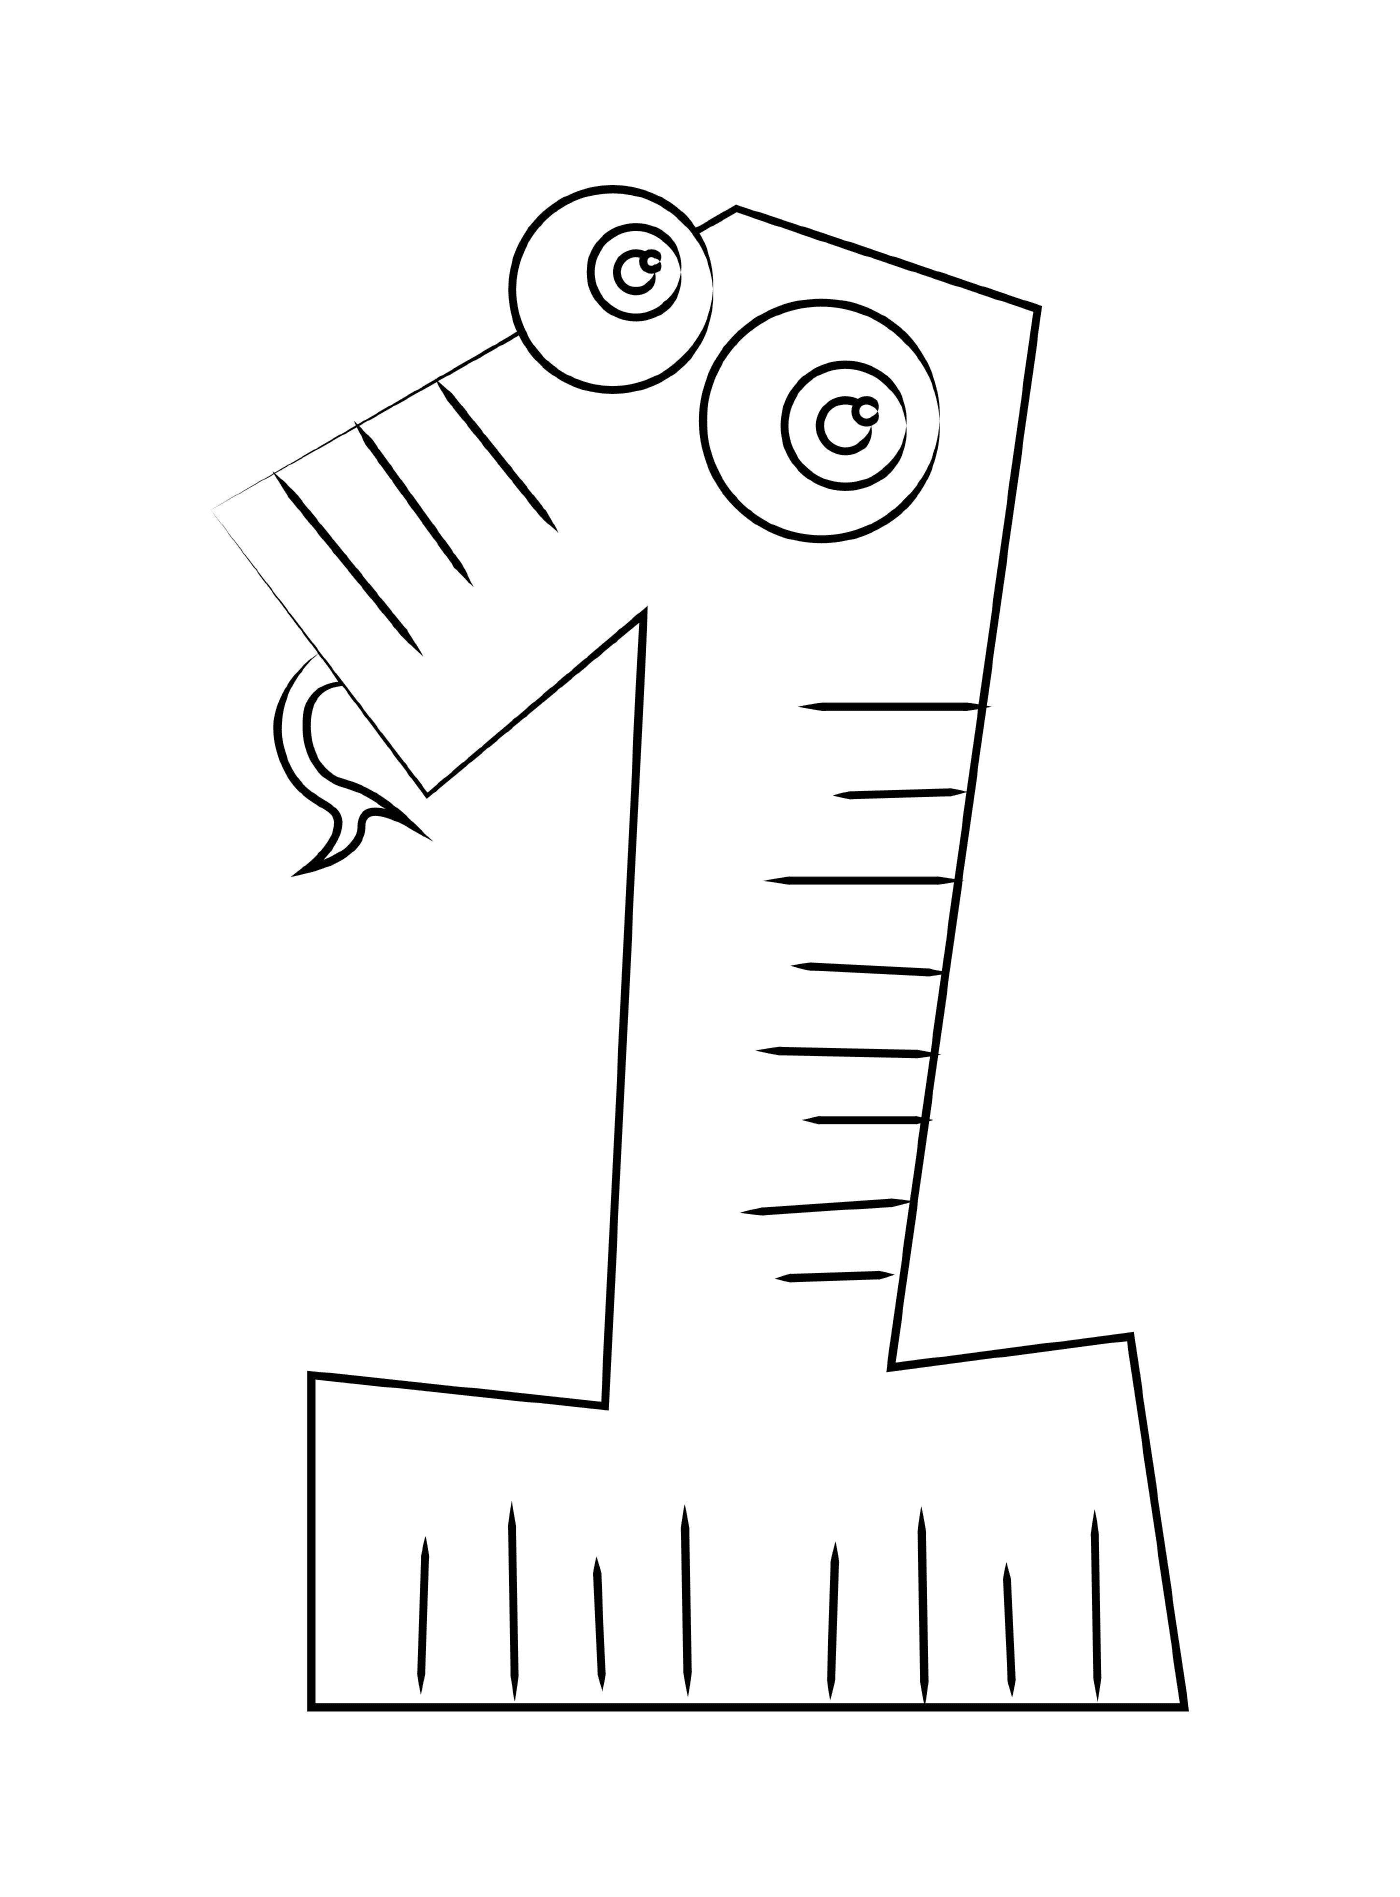  Figure 1 for children 